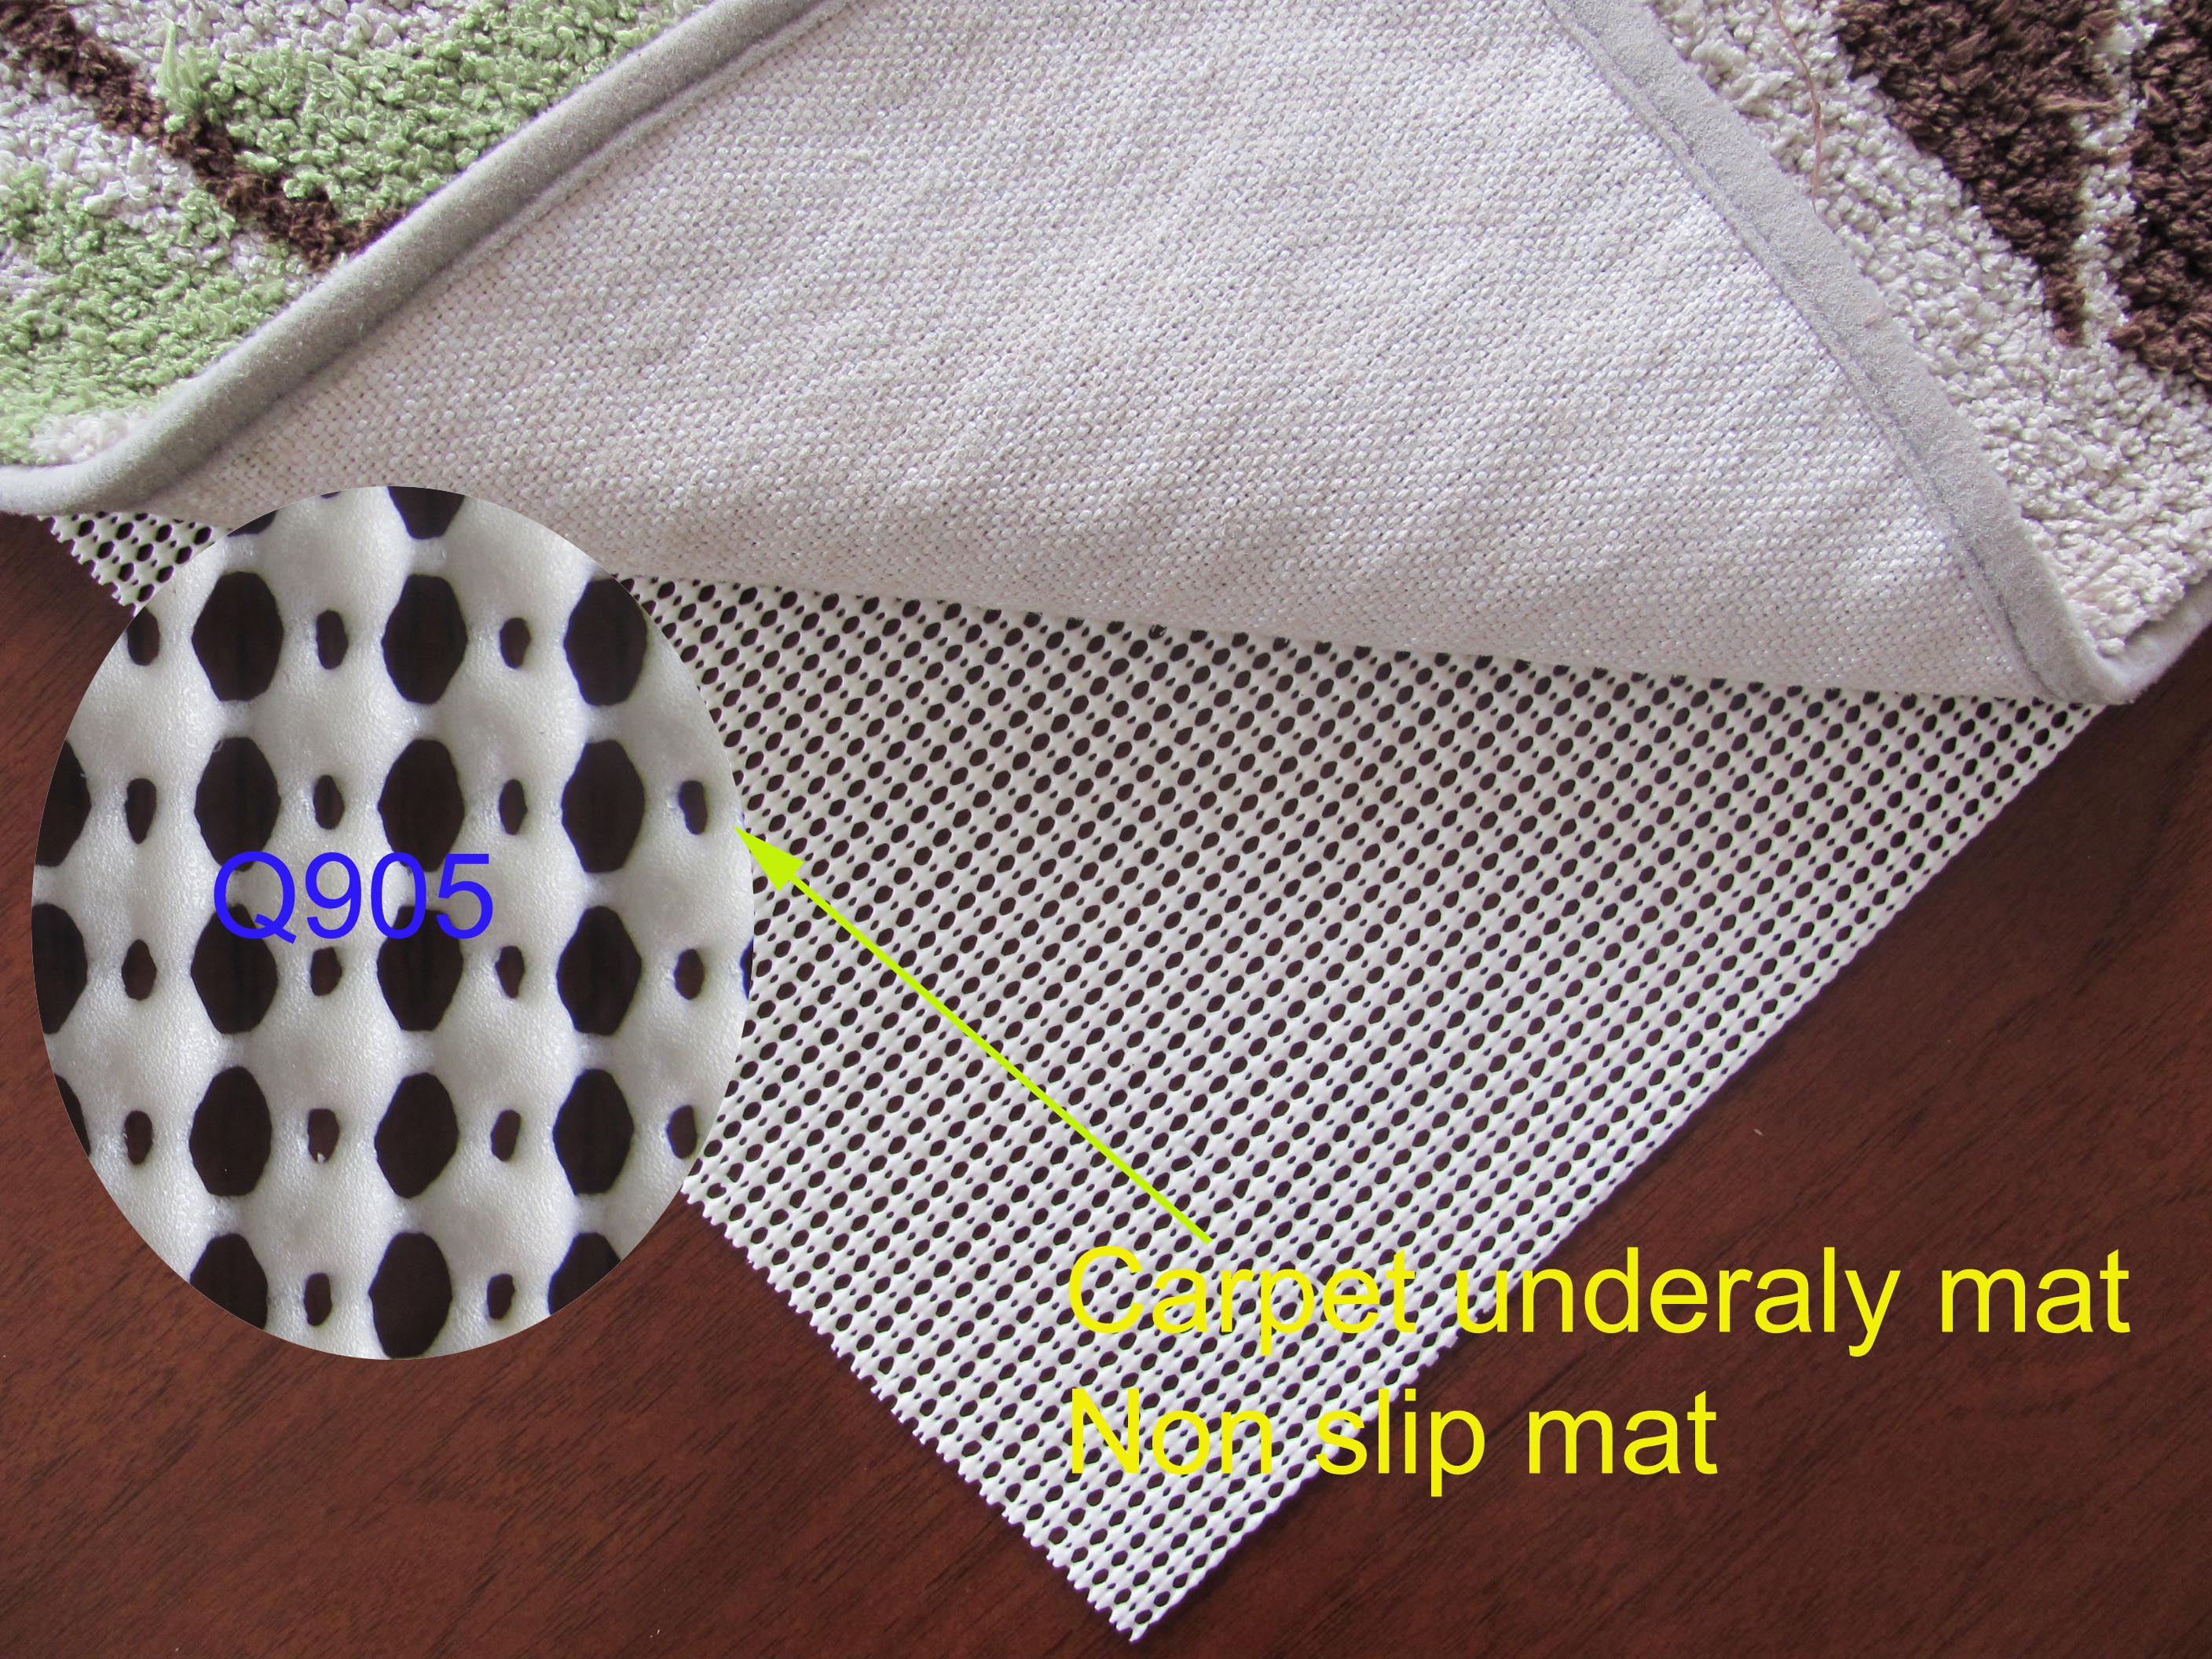 La base de alfombra con orificio fino en forma de diamante se aplica a la parte inferior de la alfombra, que es antideslizante, resistente al desgaste y duradera